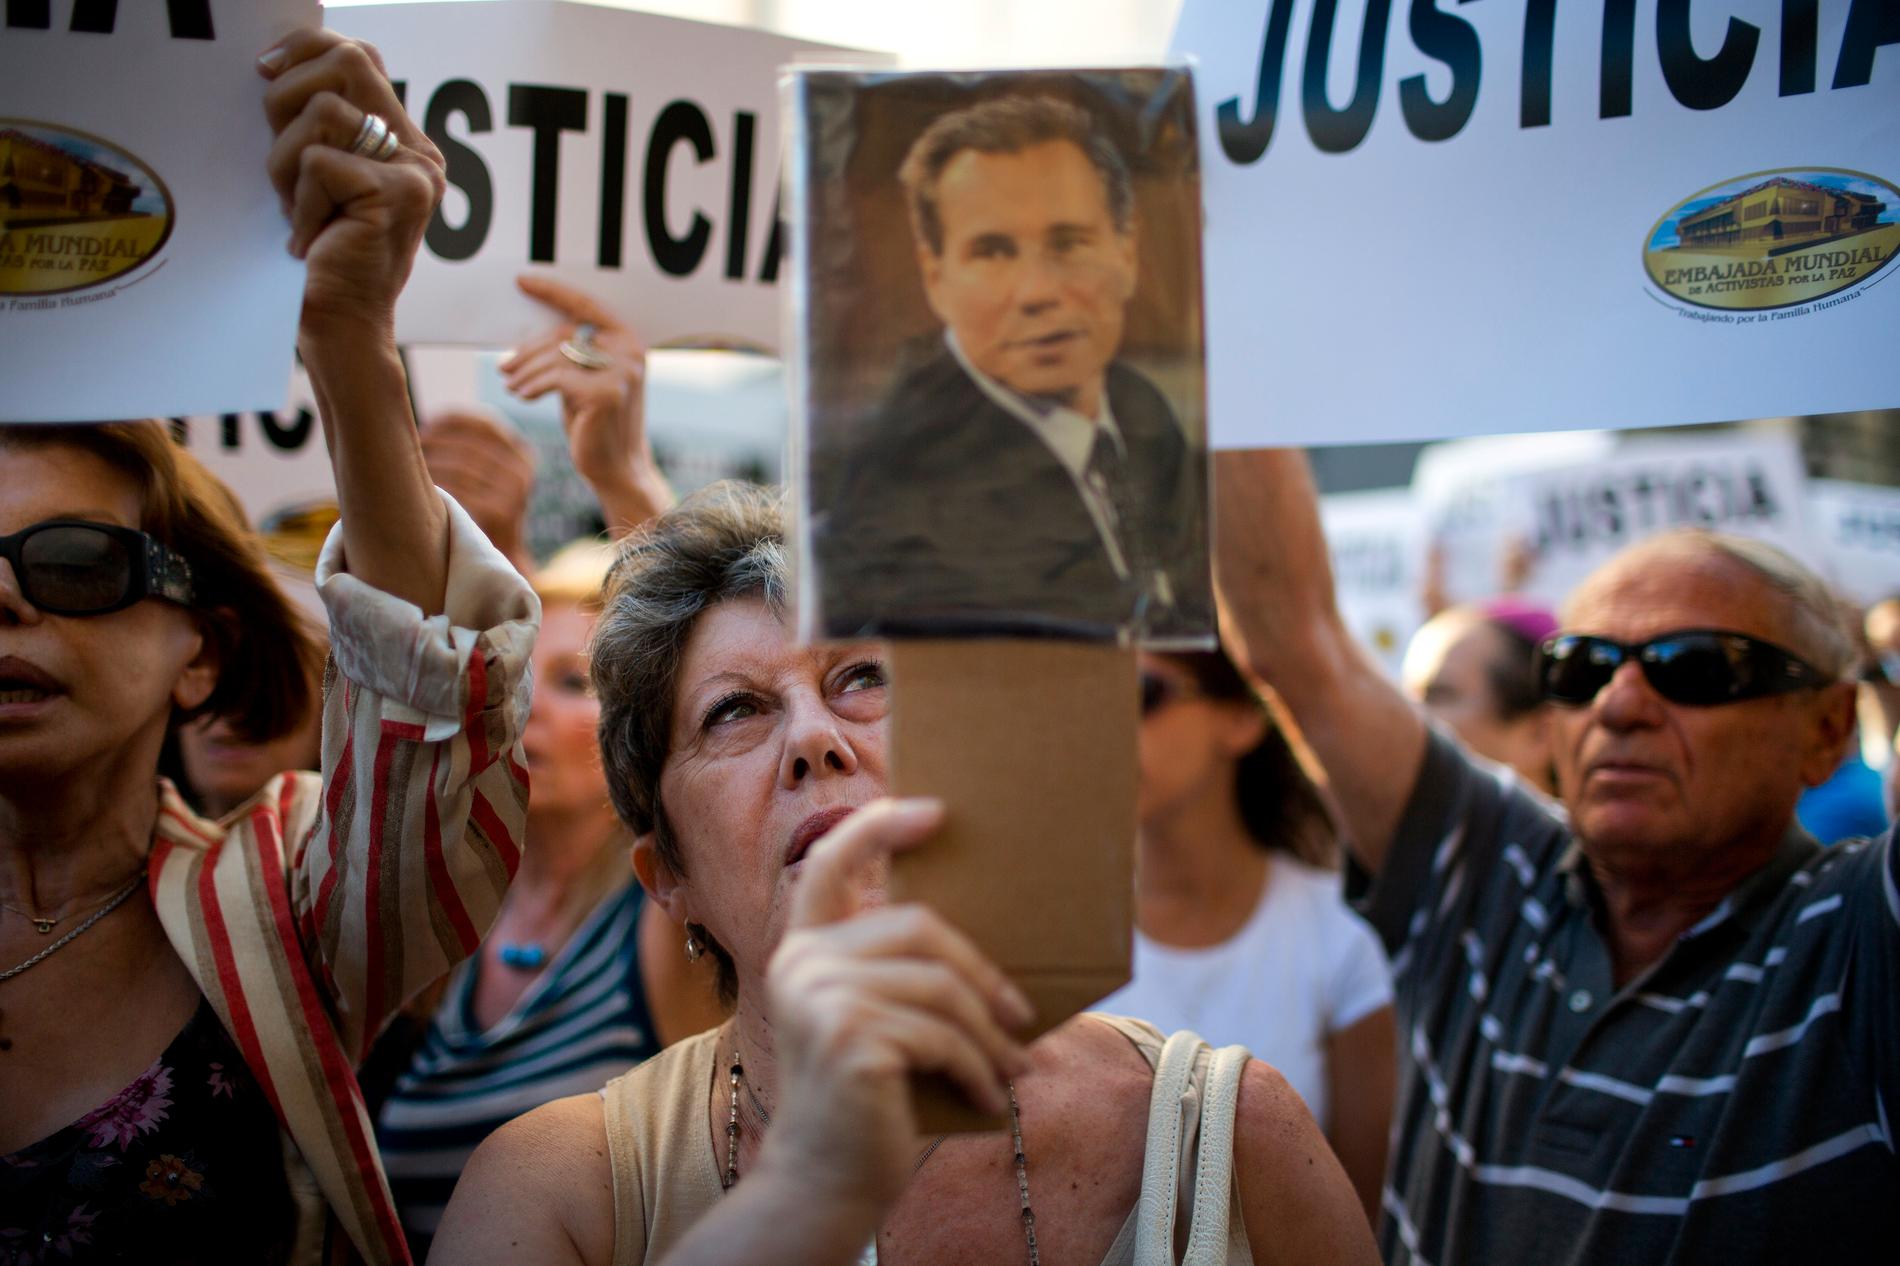 ”Det här skulle kunna bli min död”, sa Alberto Nisman, 51, när han släppte en rapport där han anklagade landets president Cristina Fernández de Kirchner och andra tjänstemän för att ha tystat ner och dolt Irans inblandning i AMIA-attentatet 1994 – det värsta terrordådet i Argentinas historia.
Dagen efter – 17 januari – hittades han skjuten i huvudet i badrummet i sin bostad.
Bara timmar senare skulle åklagaren ha presenterat sina anklagelser mot presidenten inför landets nationalkongress.